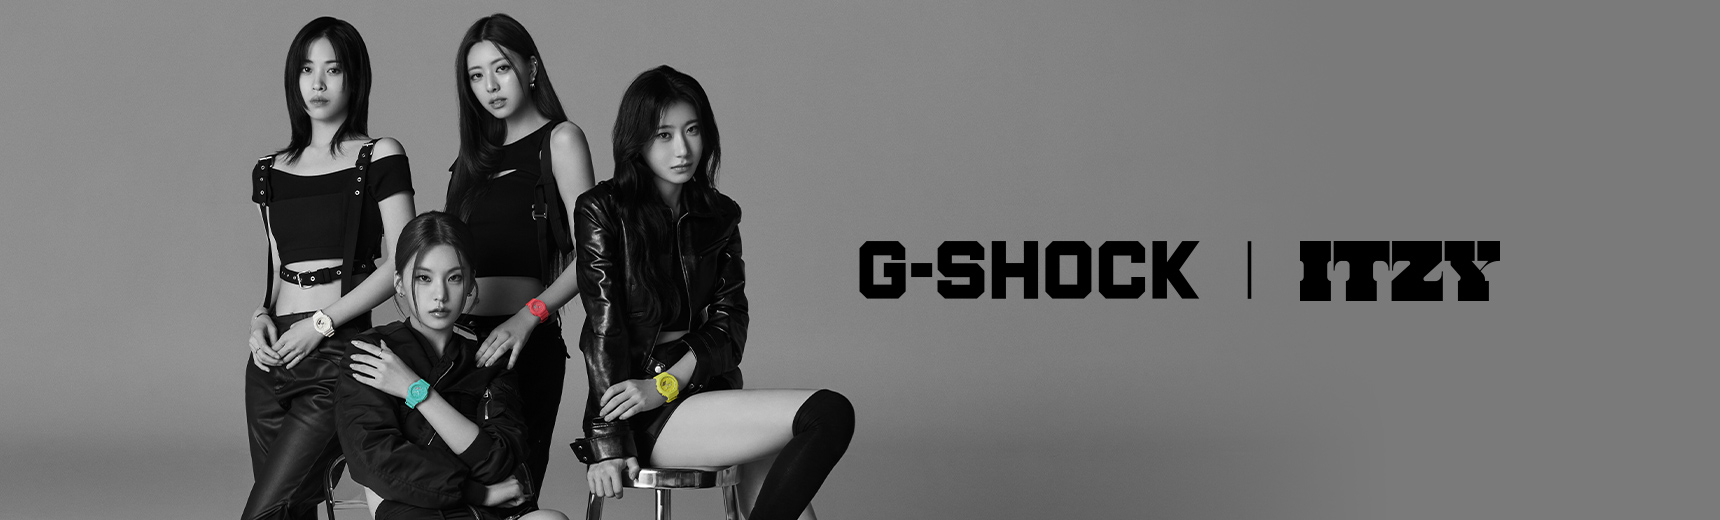 G-SHOCK | ITZY 横幅